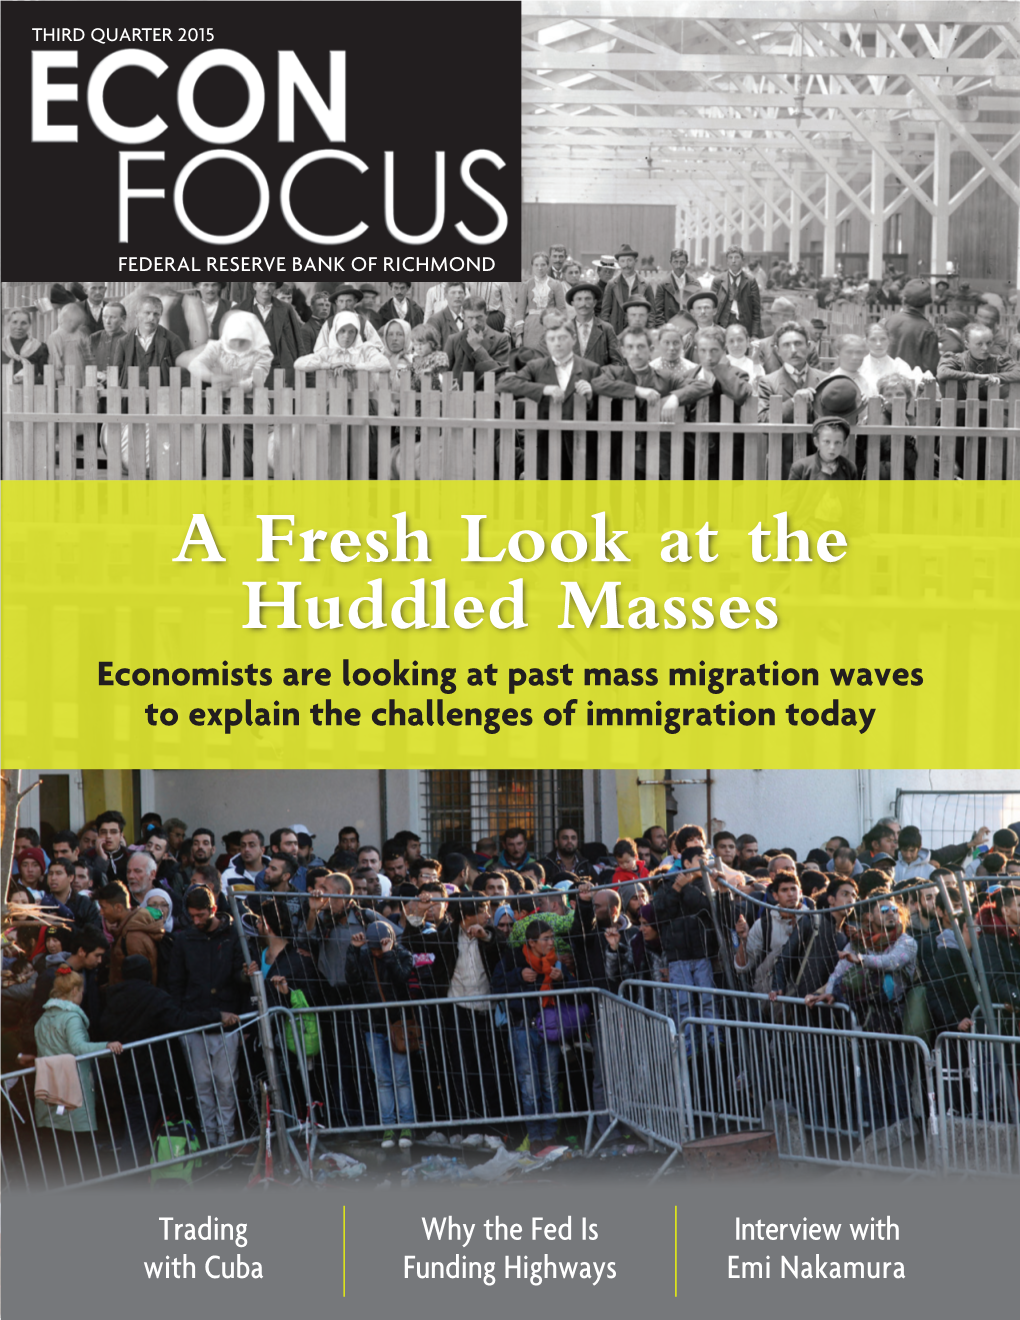 Econ Focus, Third Quarter 2015